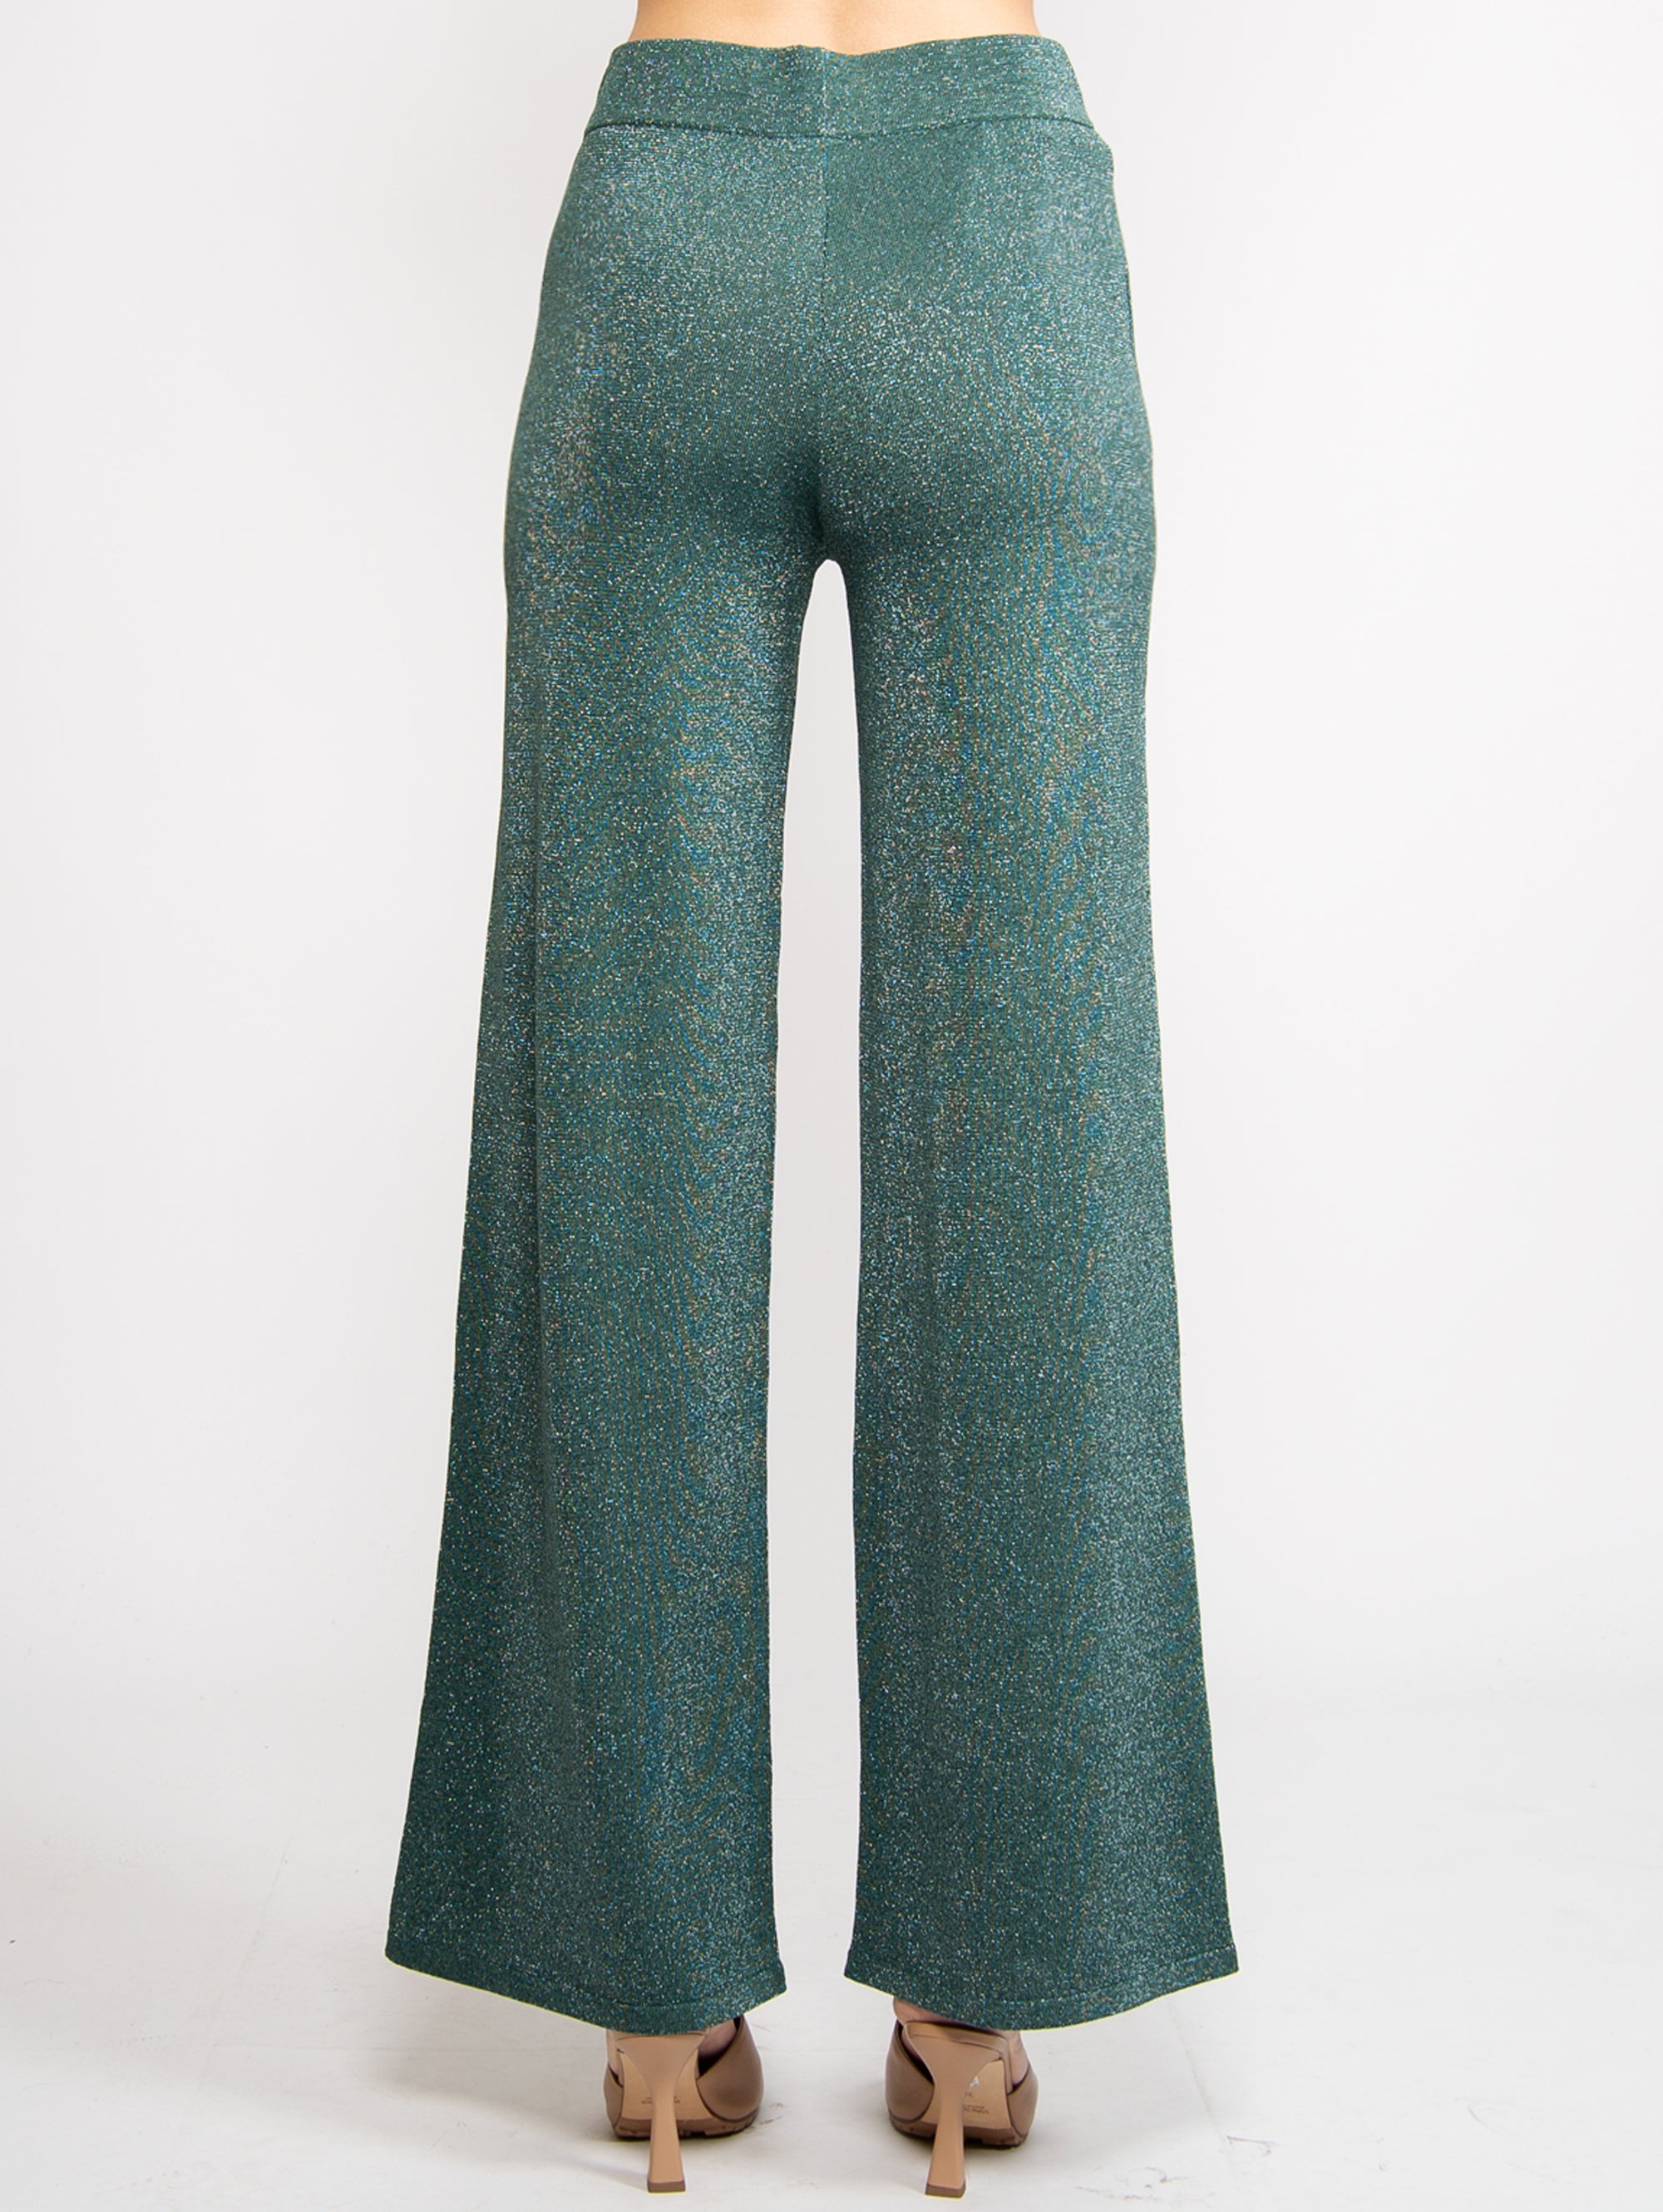 Green Lurex Knit Pants